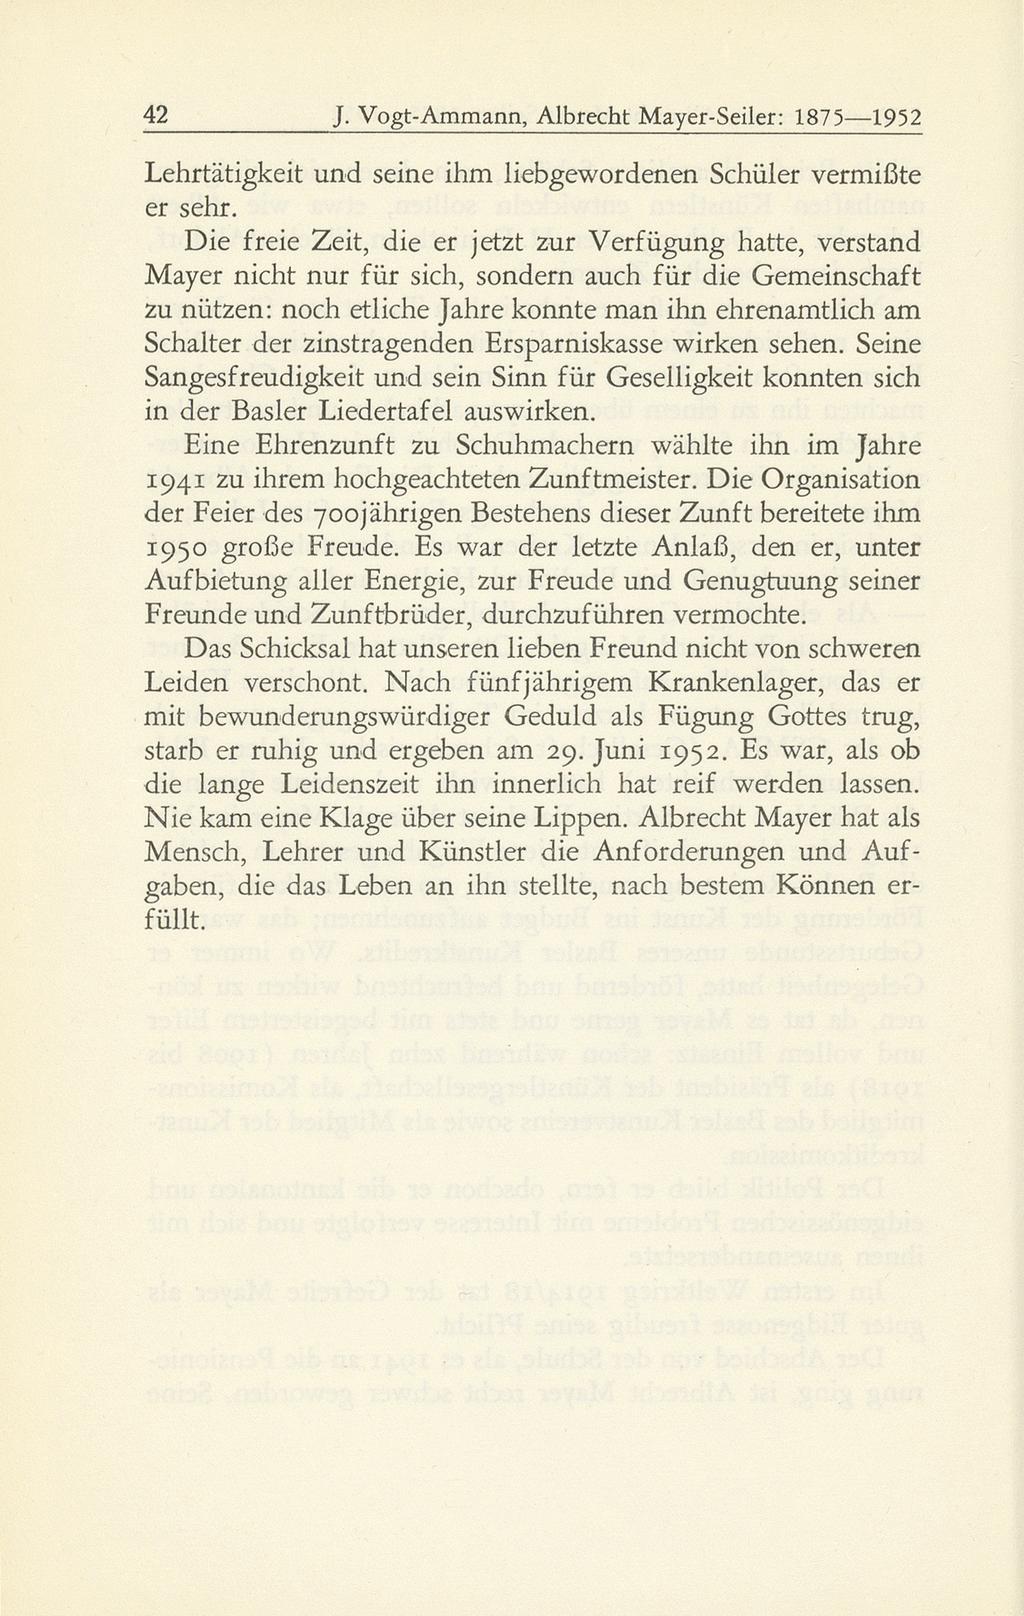 42 J. Vogt-Ammann, Albrecht Mayer-Seiler: 1875 1952 Lehrtätigkeit und seine ihm liebgewordenen Schüler vermißte er sehr.